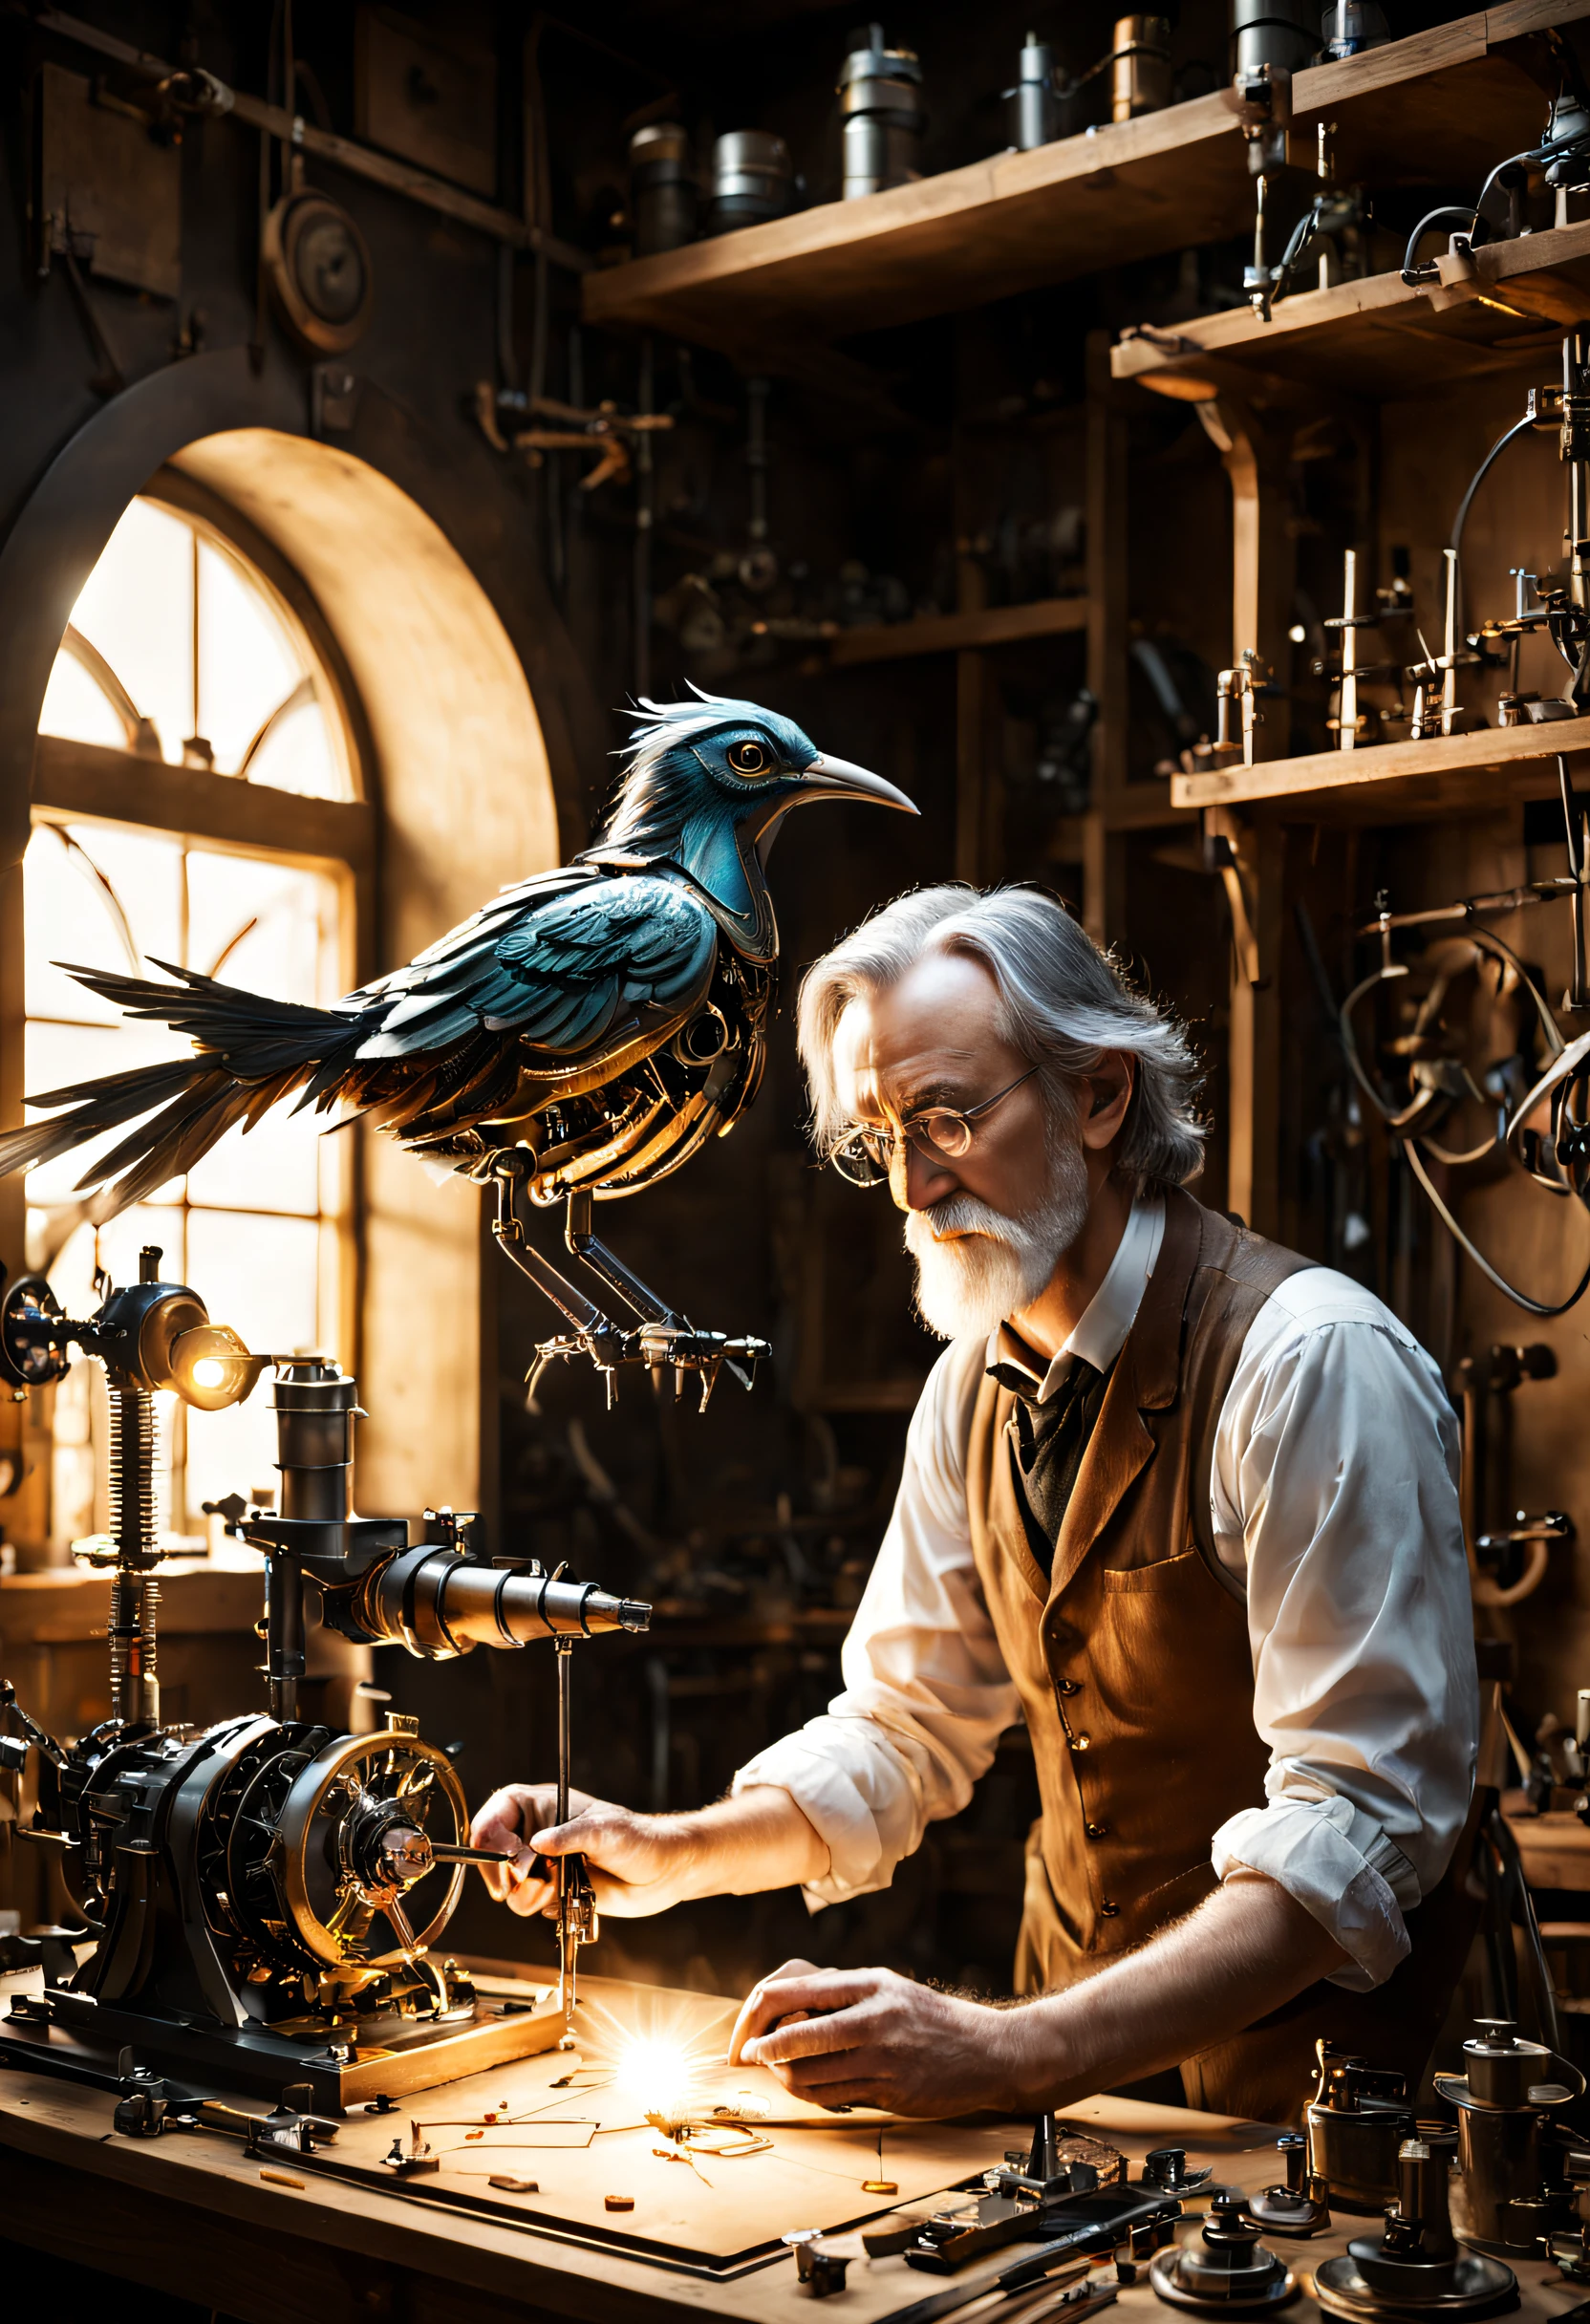 Un scientifique crée un oiseau mécanique dans un atelier. Il y met les dernières pièces. Ambiance magique à la Tolkien.